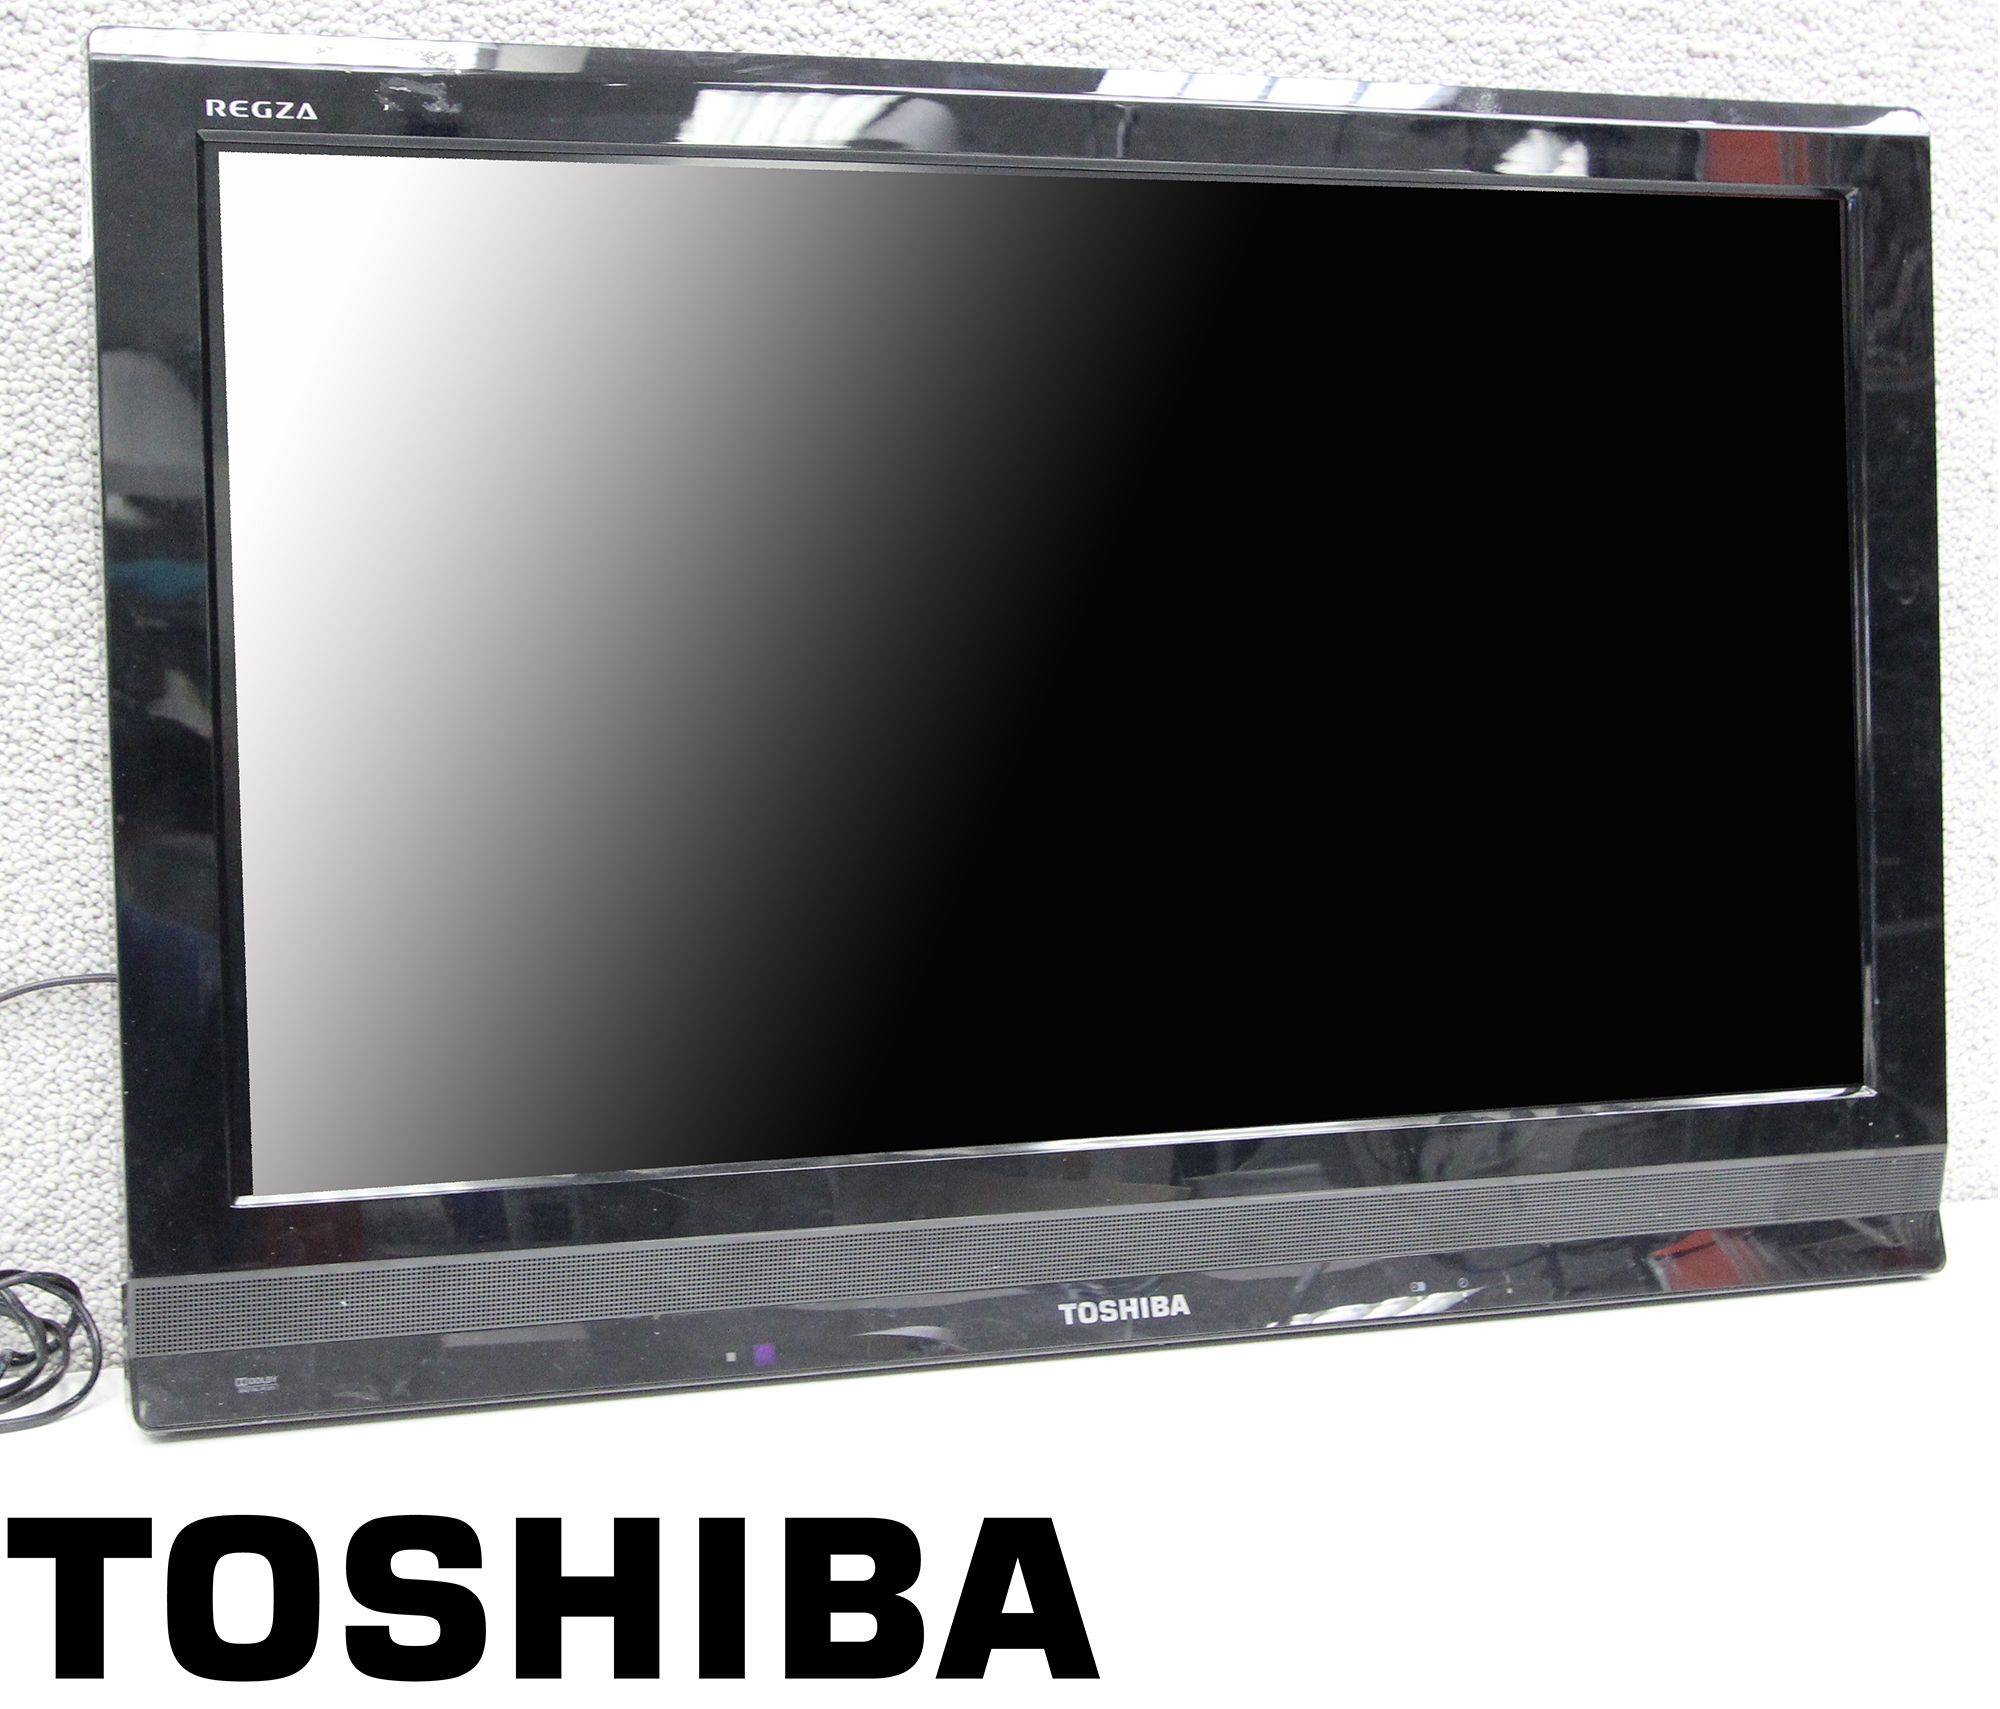 TELEVISEUR DE MARQUE TOSHIBA. MODELE REGZA. ECRAN LCD DE 30 POUCES. 1 UNITE.